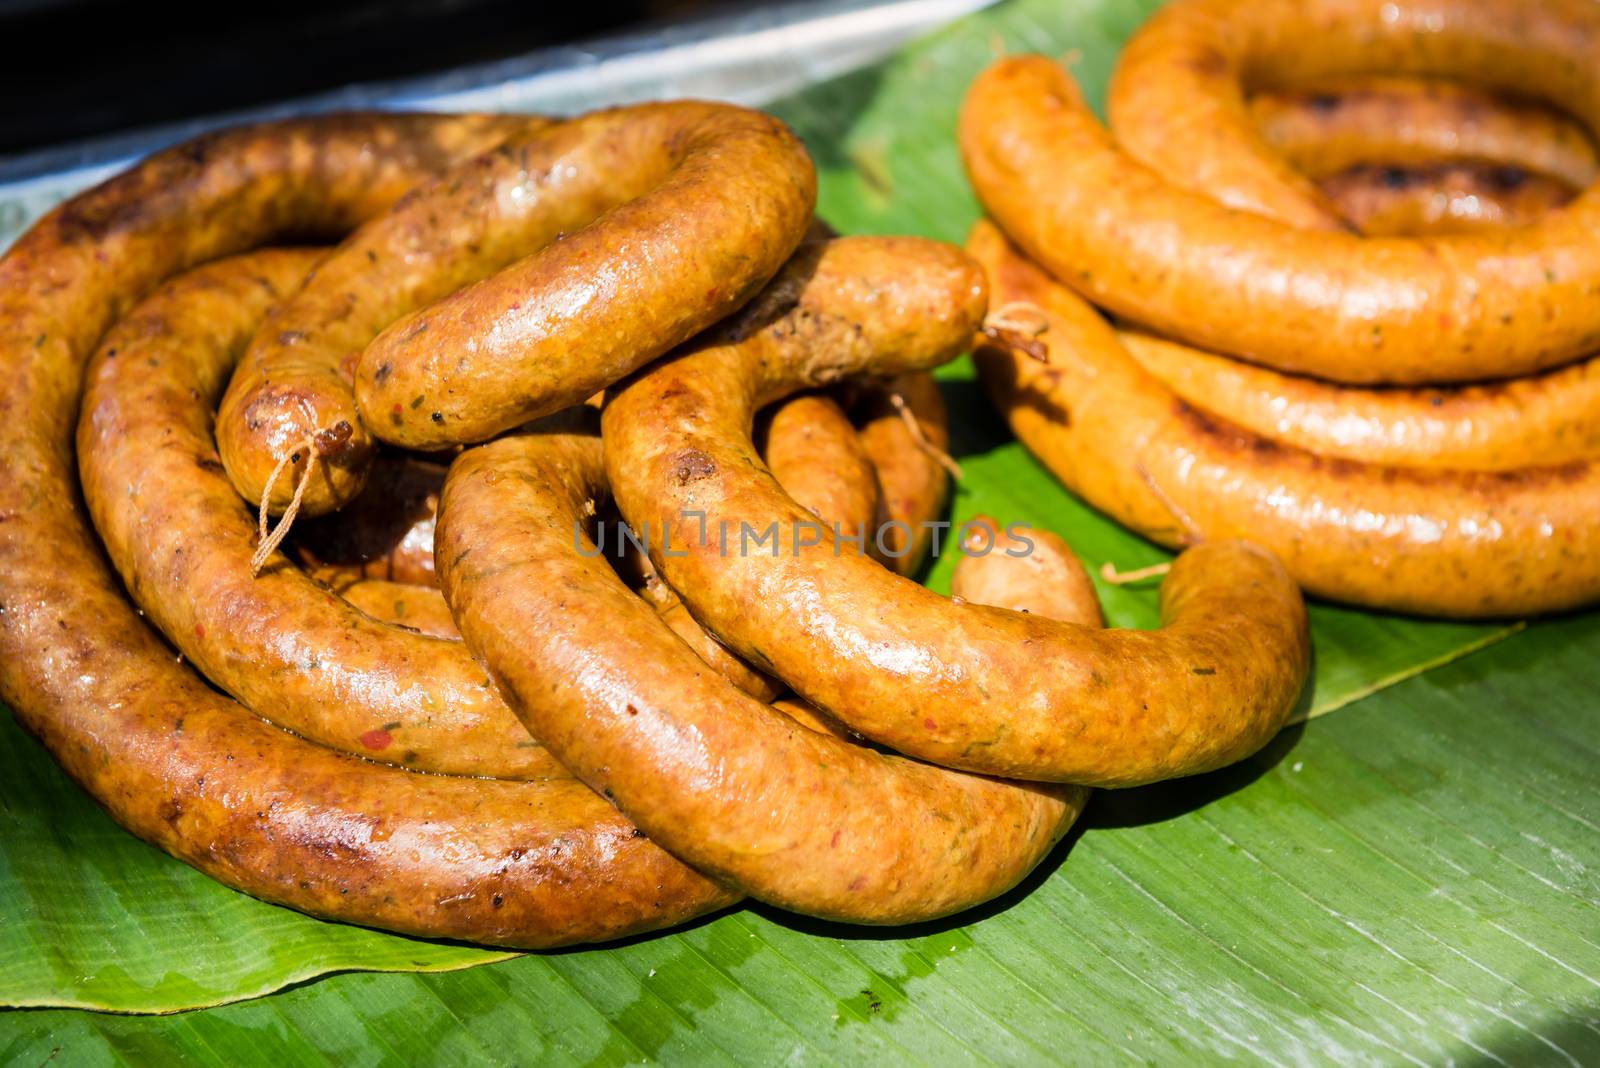 Grilled SaiUa (Northern Thai sausage) in street market.